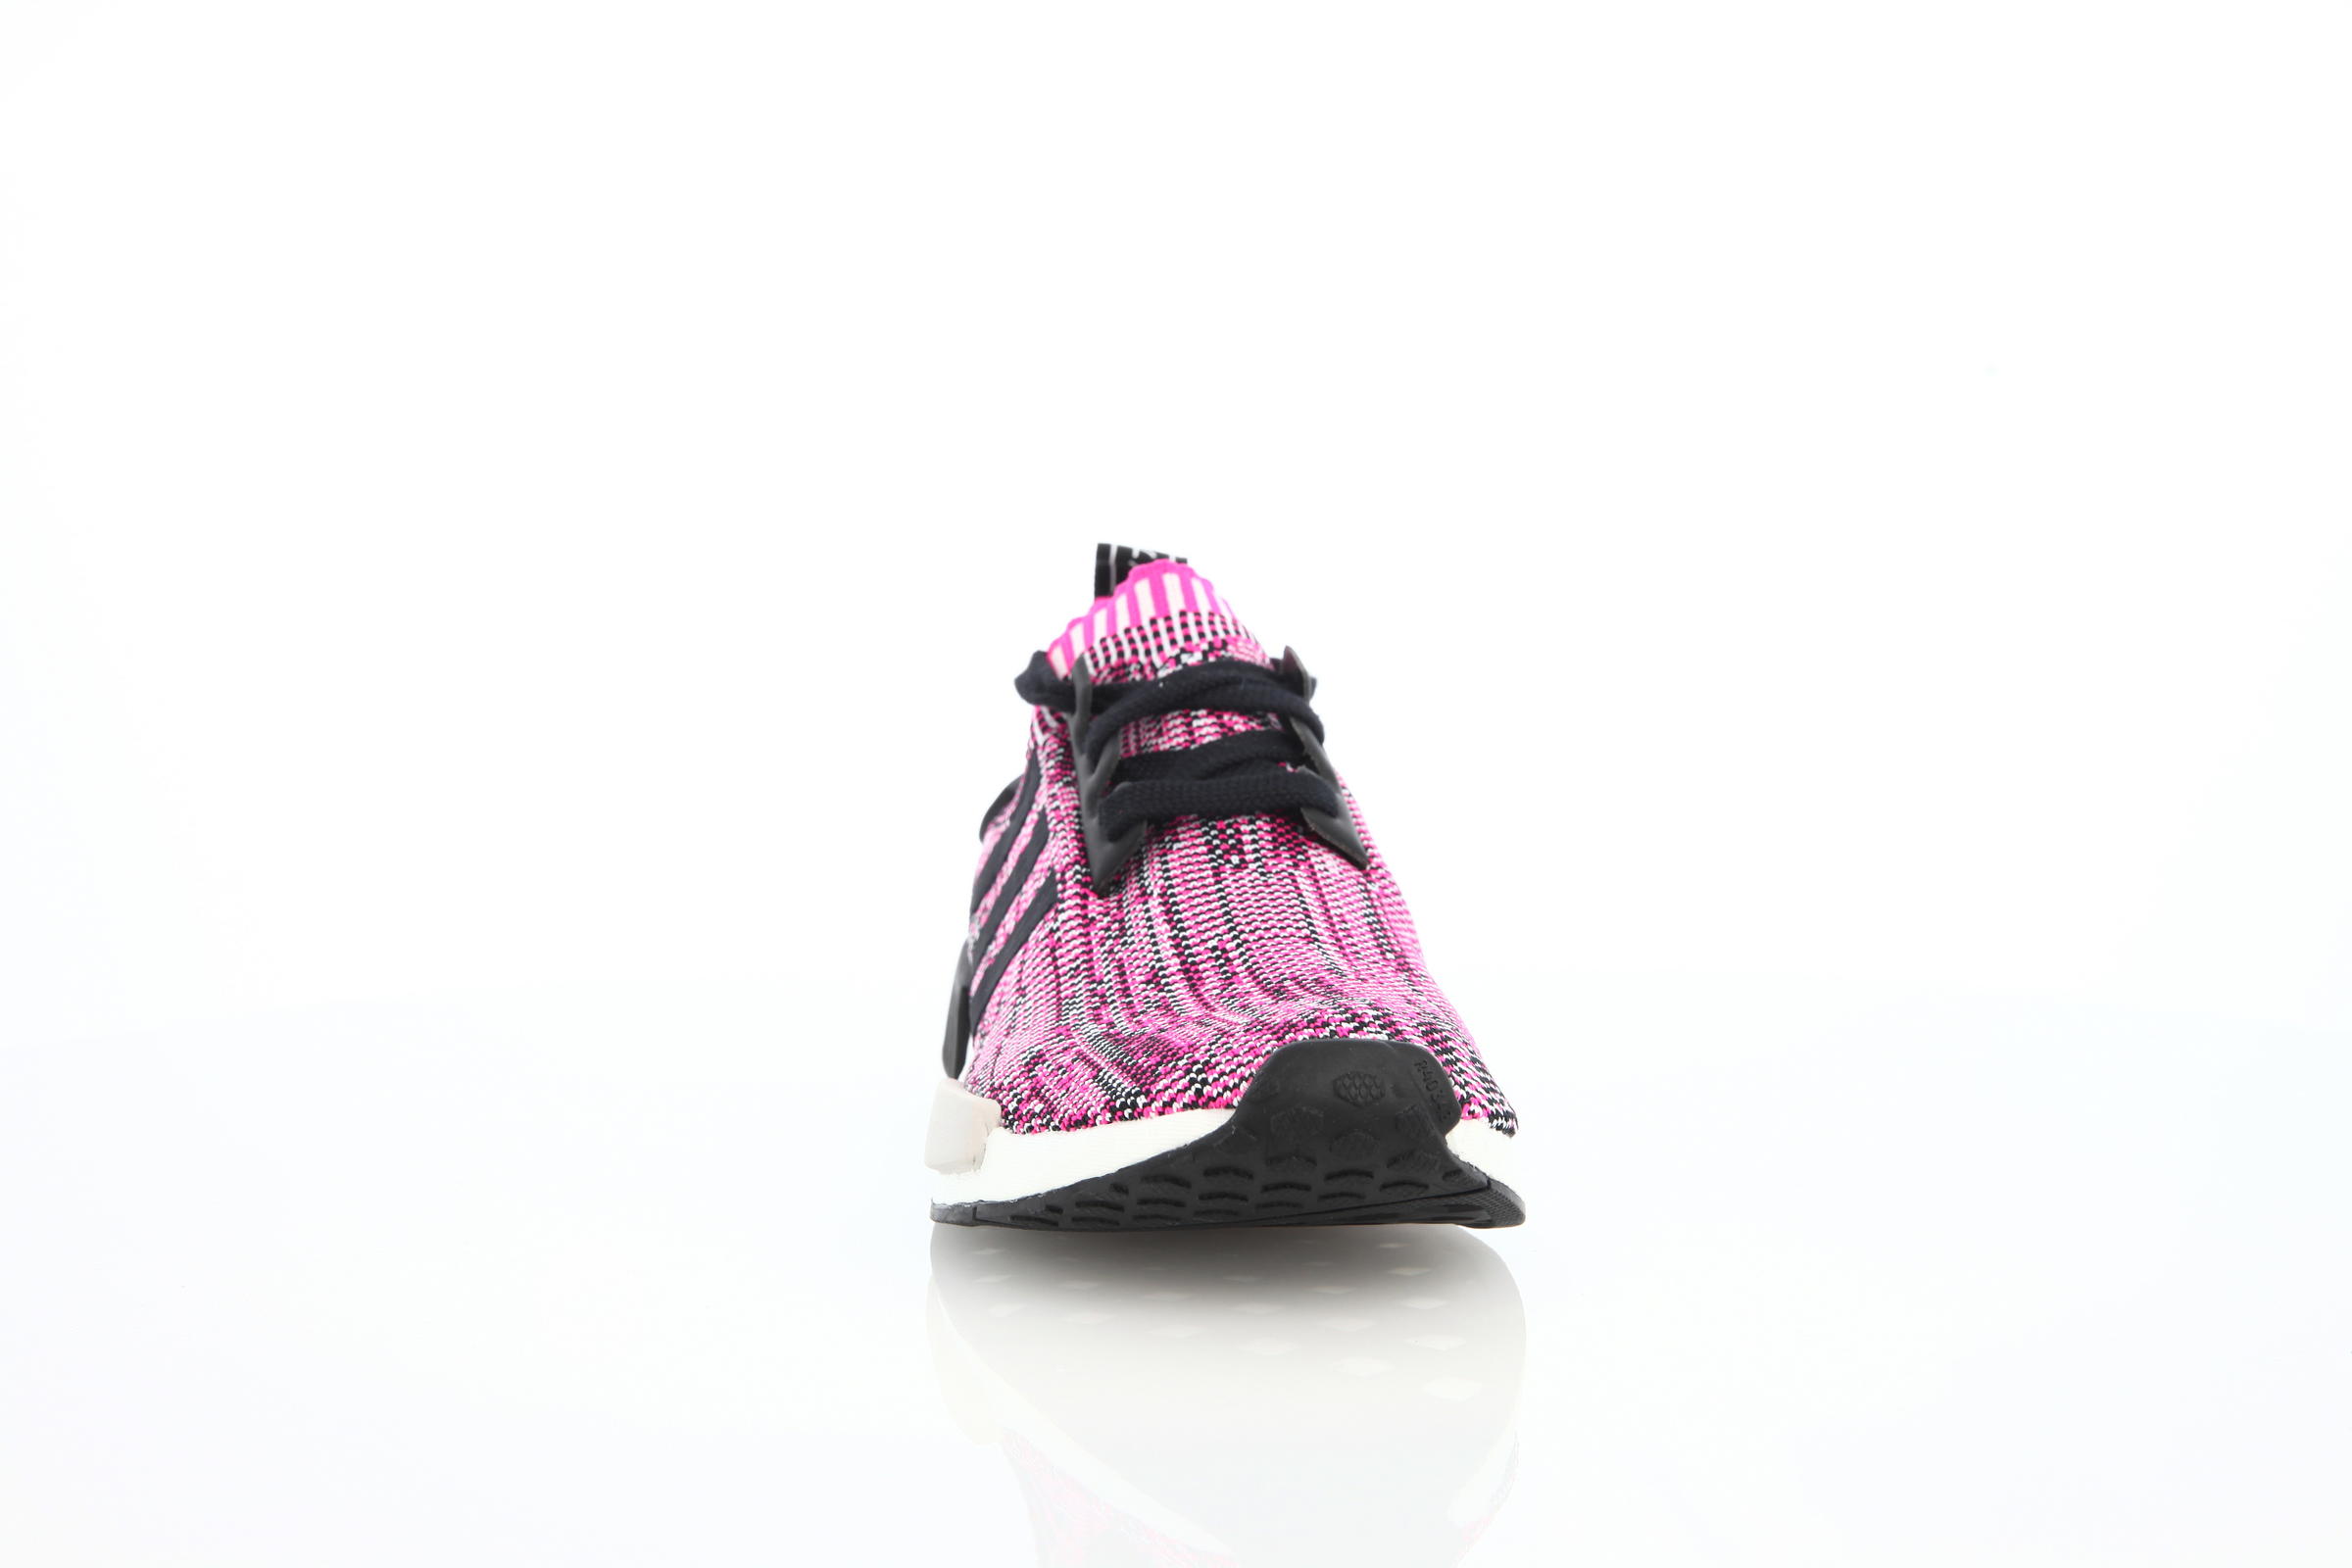 adidas Originals Nmd R1 Boost Runner W Primeknit "Shock Pink"